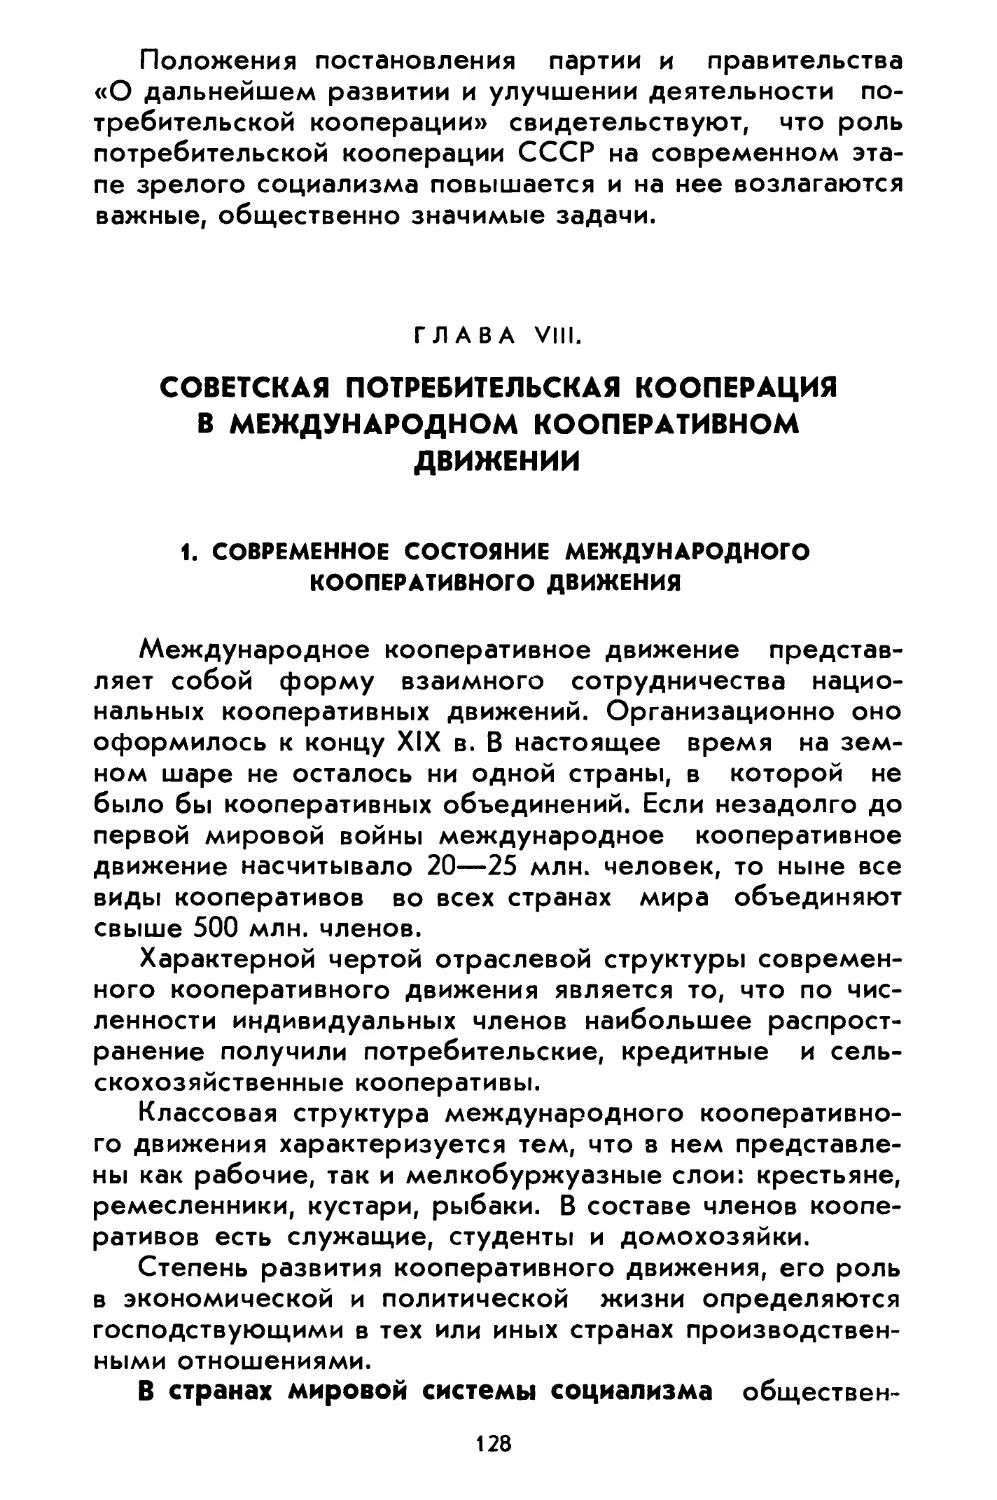 Глава VIII. Советская потребительская кооперация в международном кооперативном движении